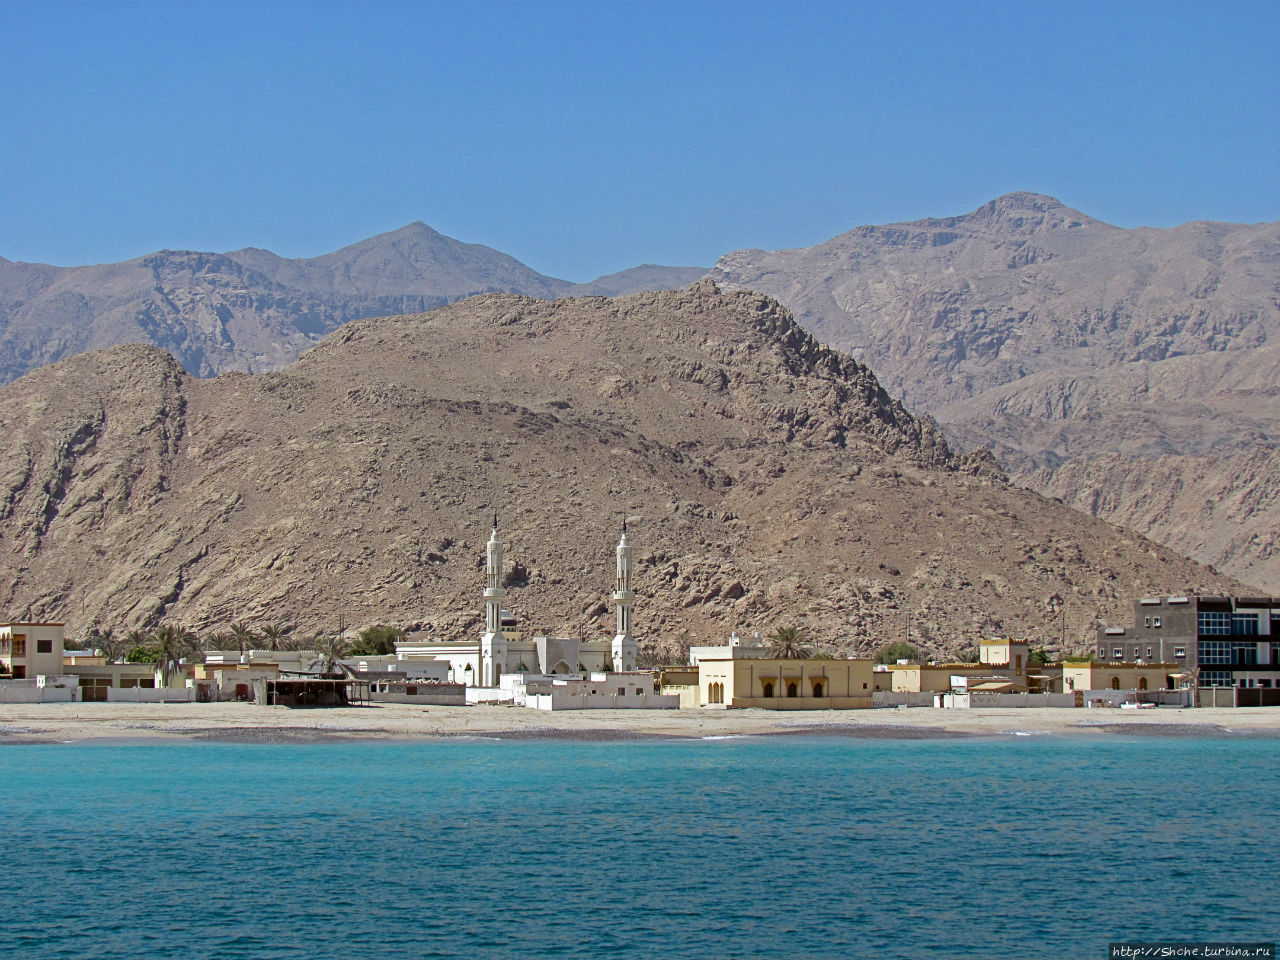 вдоль городка мы шли на корабле не более 20 минут на не большой скорости... Дибба-Аль-Байя, Оман